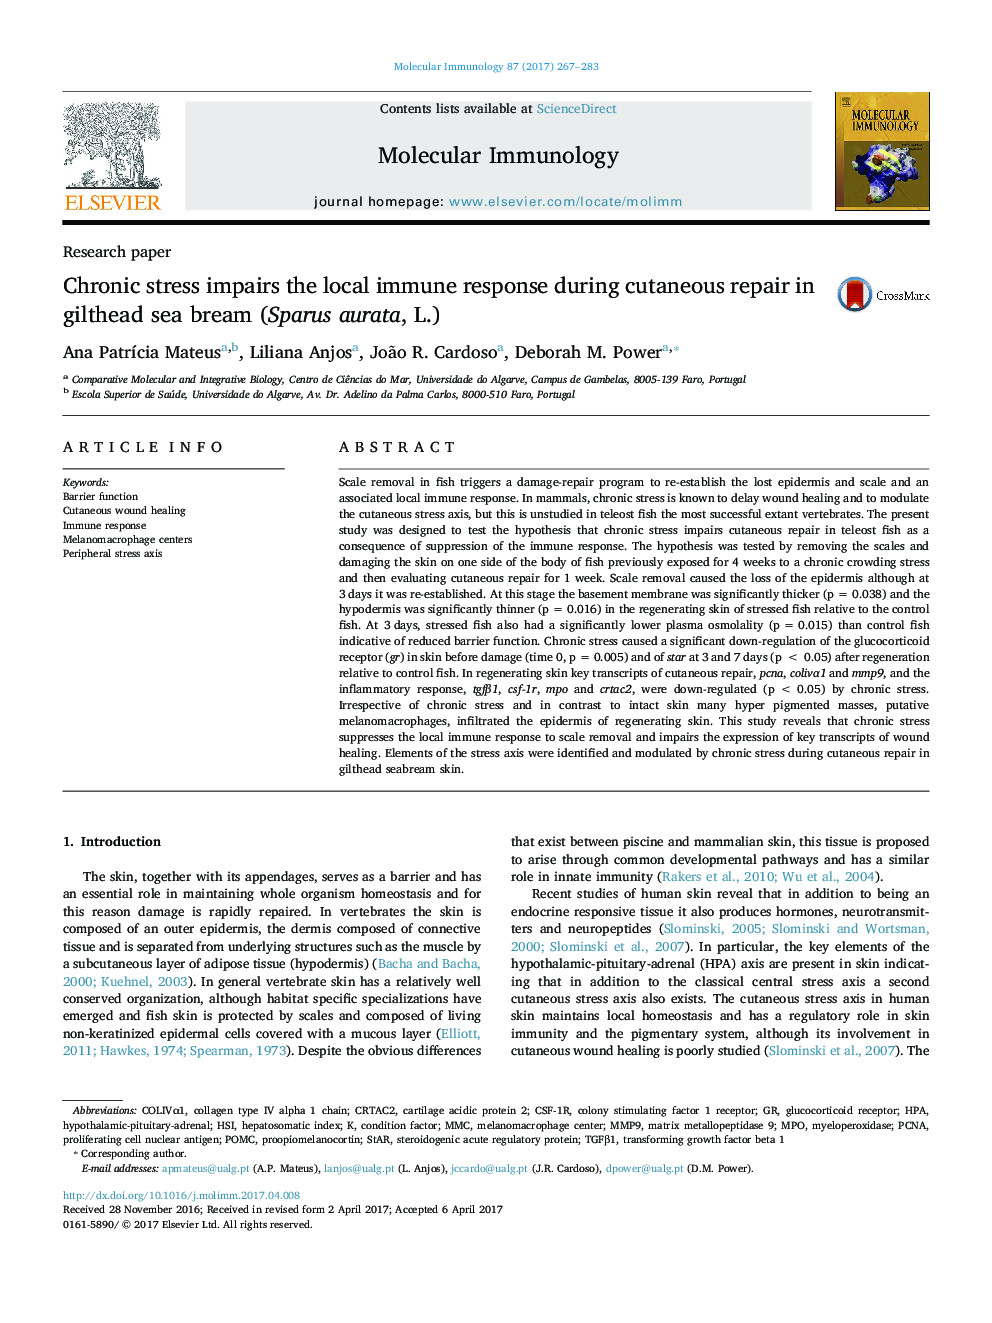 Chronic stress impairs the local immune response during cutaneous repair in gilthead sea bream (Sparus aurata, L.)